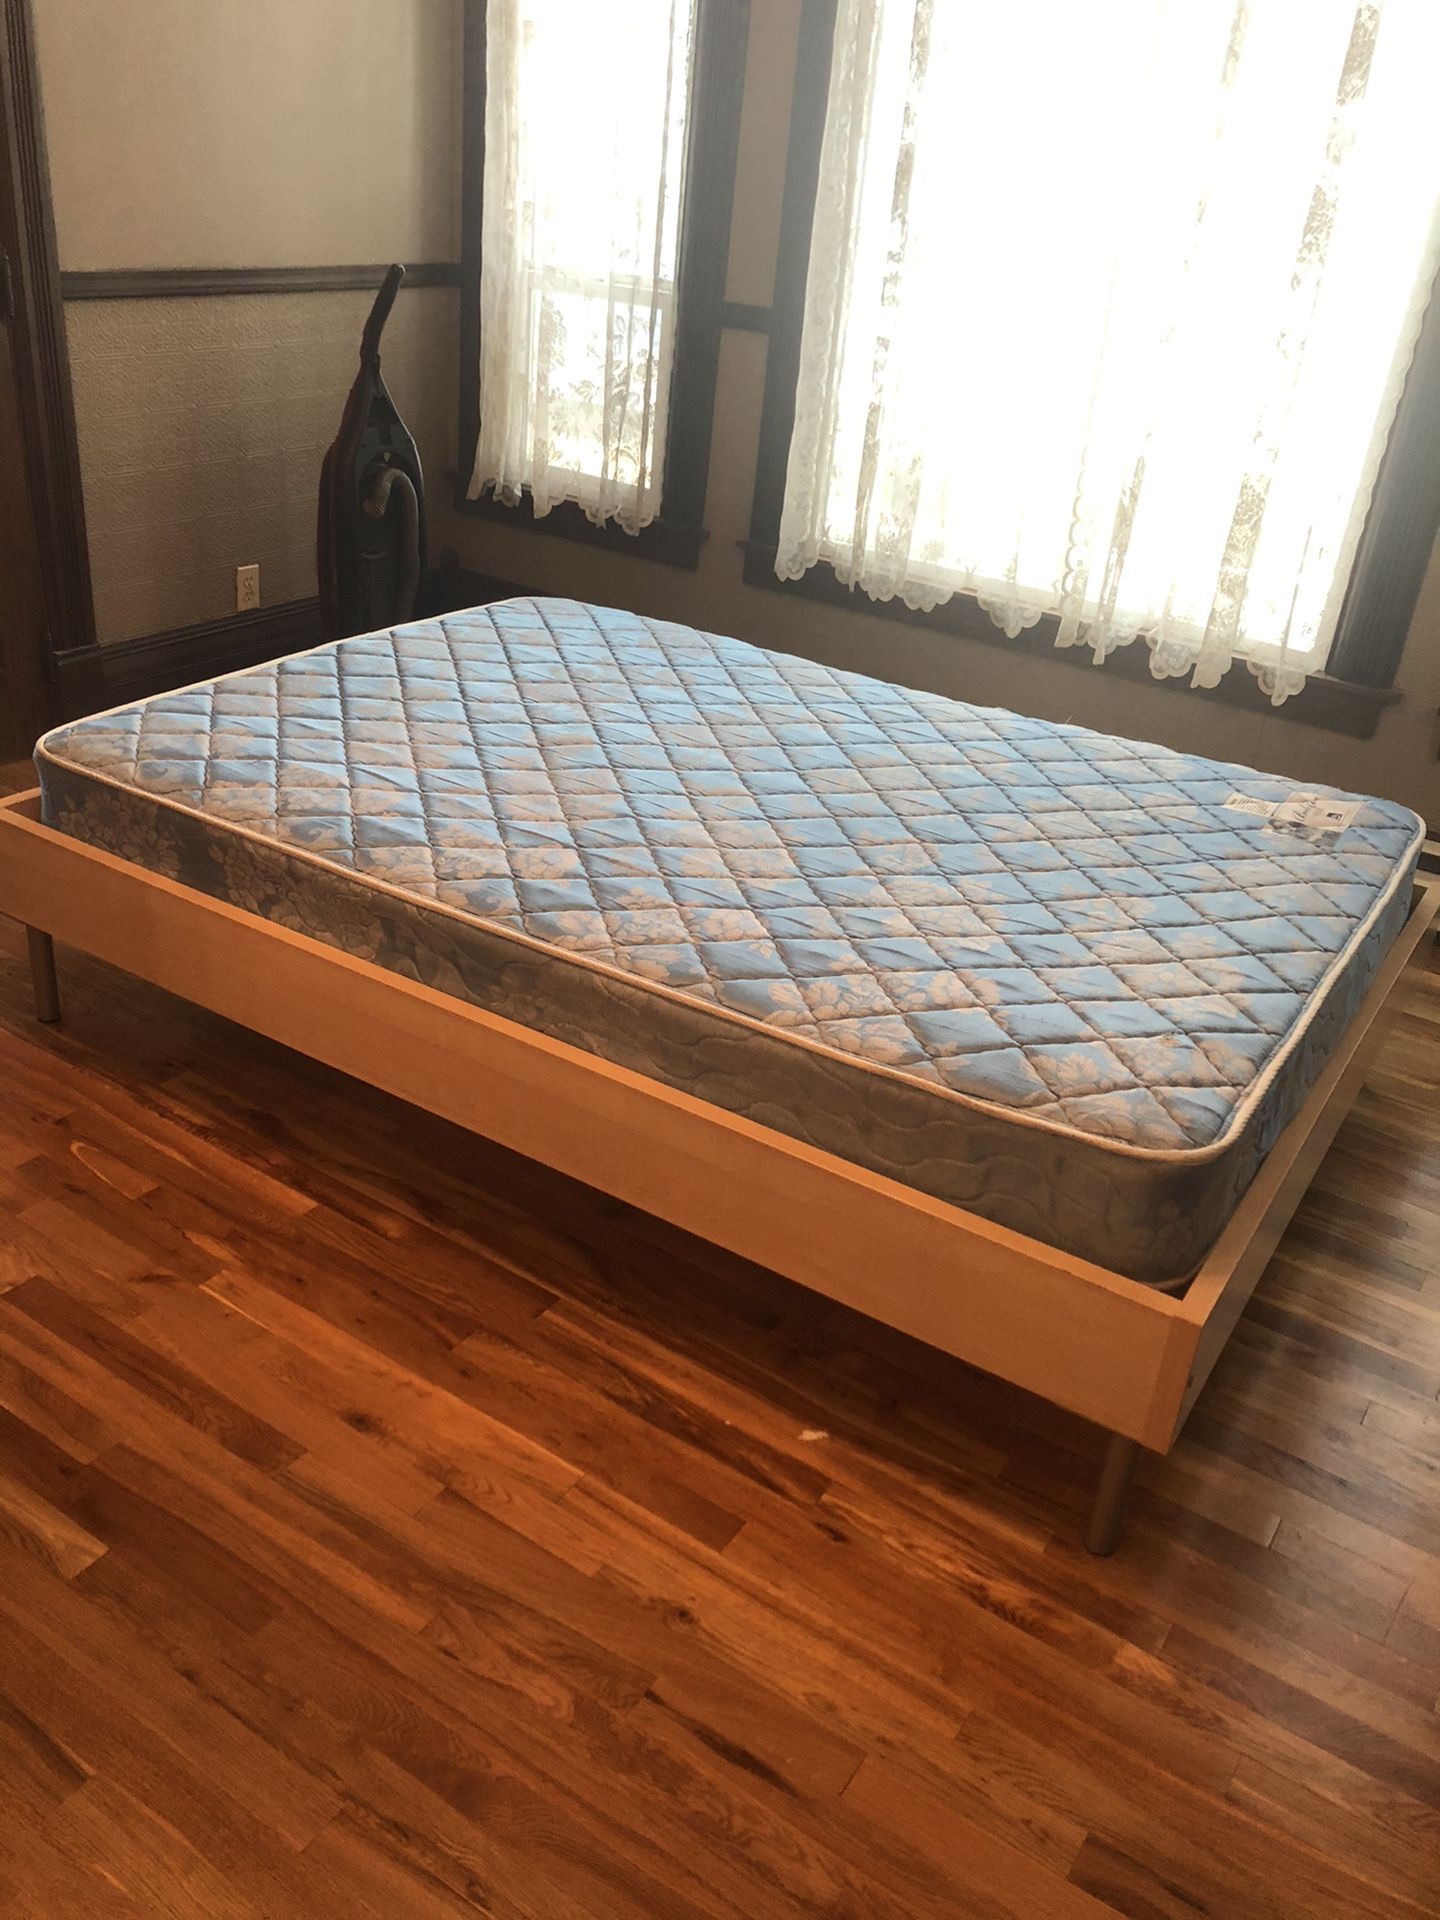 Ikea bed frame + mattress